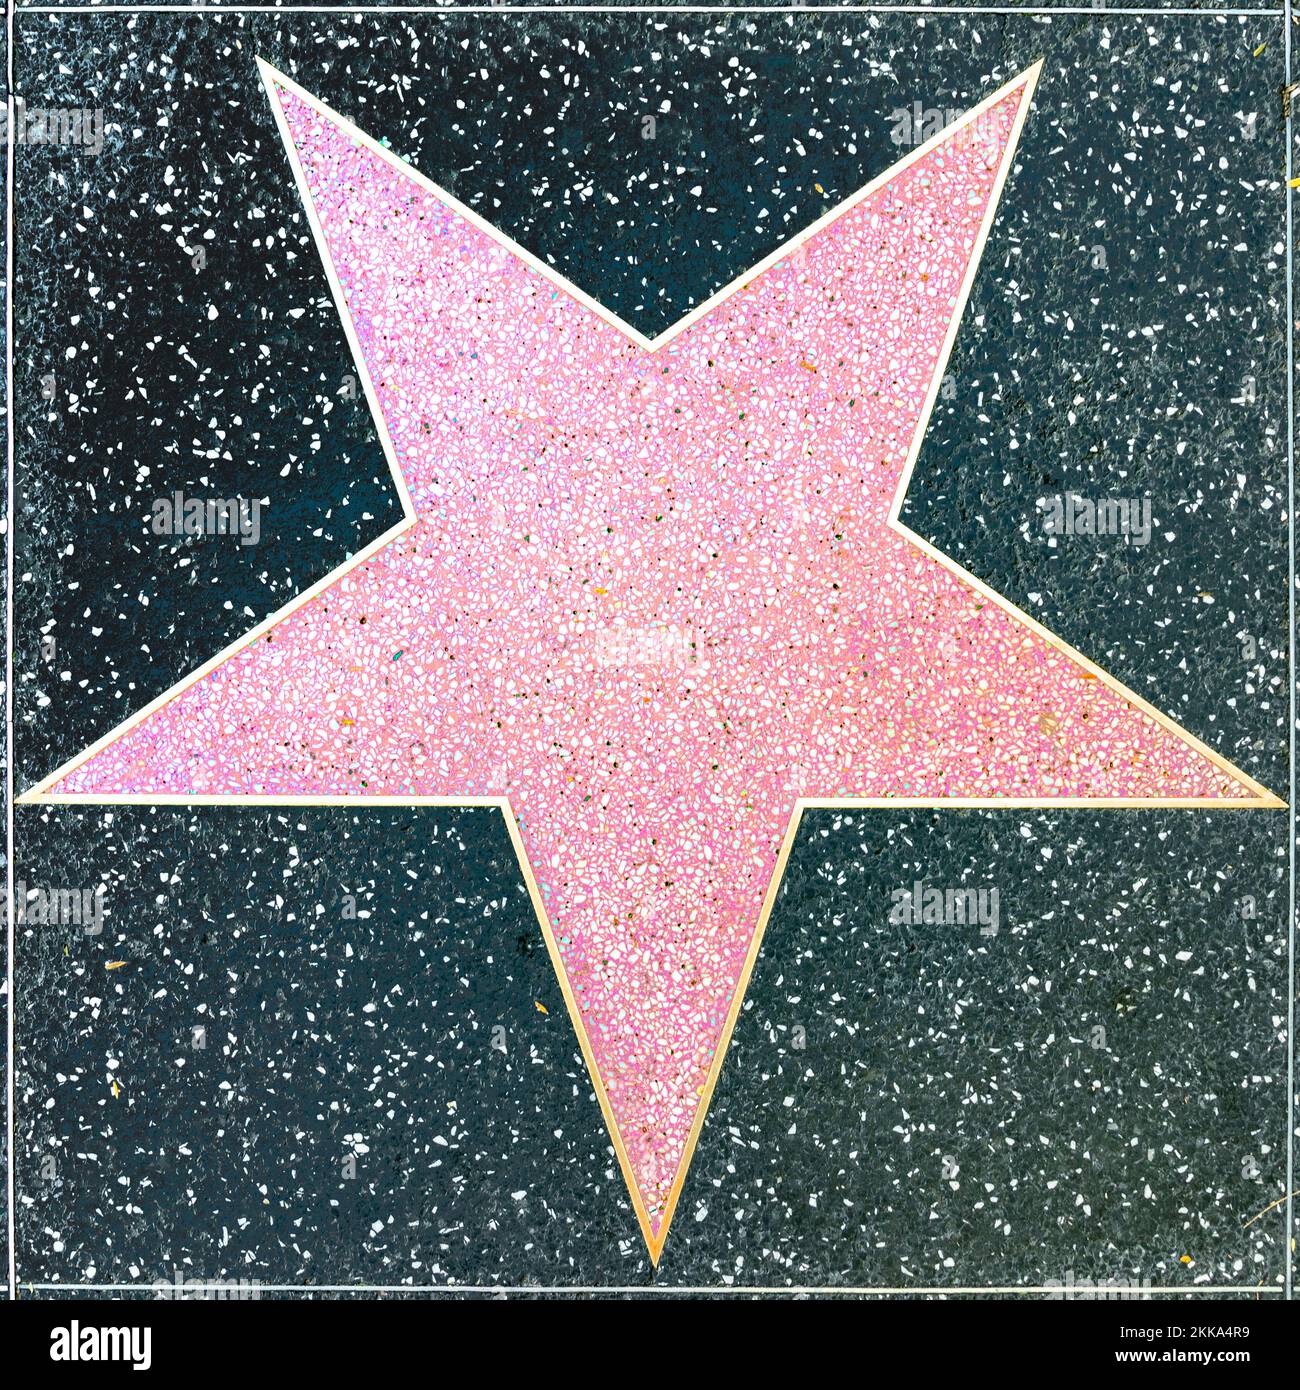 Los Angeles, USA - 17 marzo 2019: Primo piano di Empty Star sulla Hollywood Walk of Fame. Foto Stock